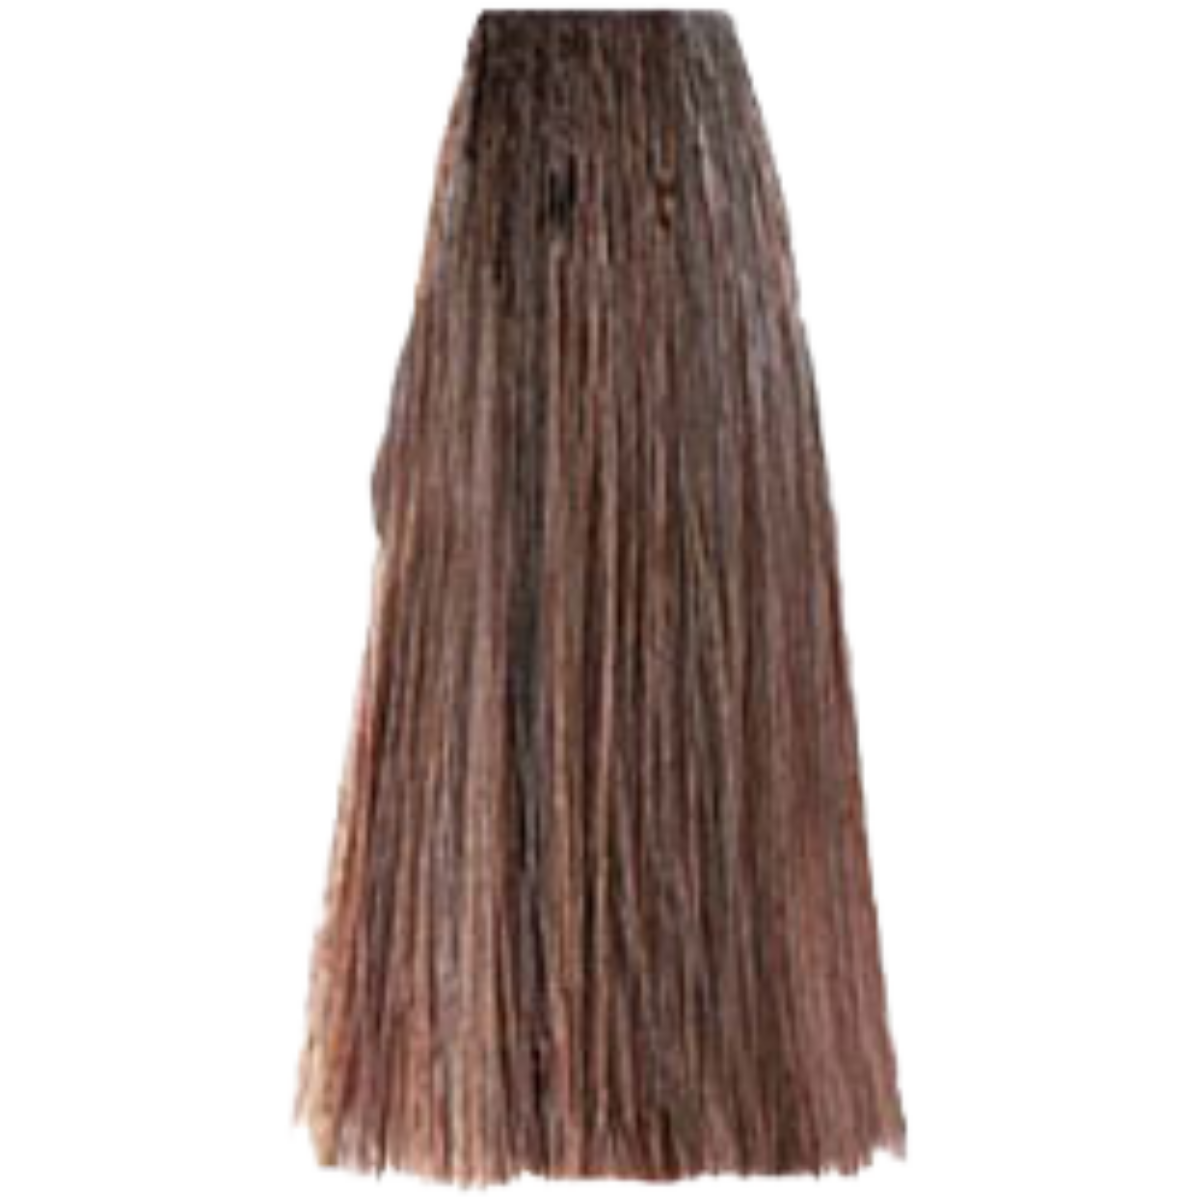 צבע שיער 7.03 WARM BLONDE פארמויטה FarmaVita צבע לשיער 100 גרם